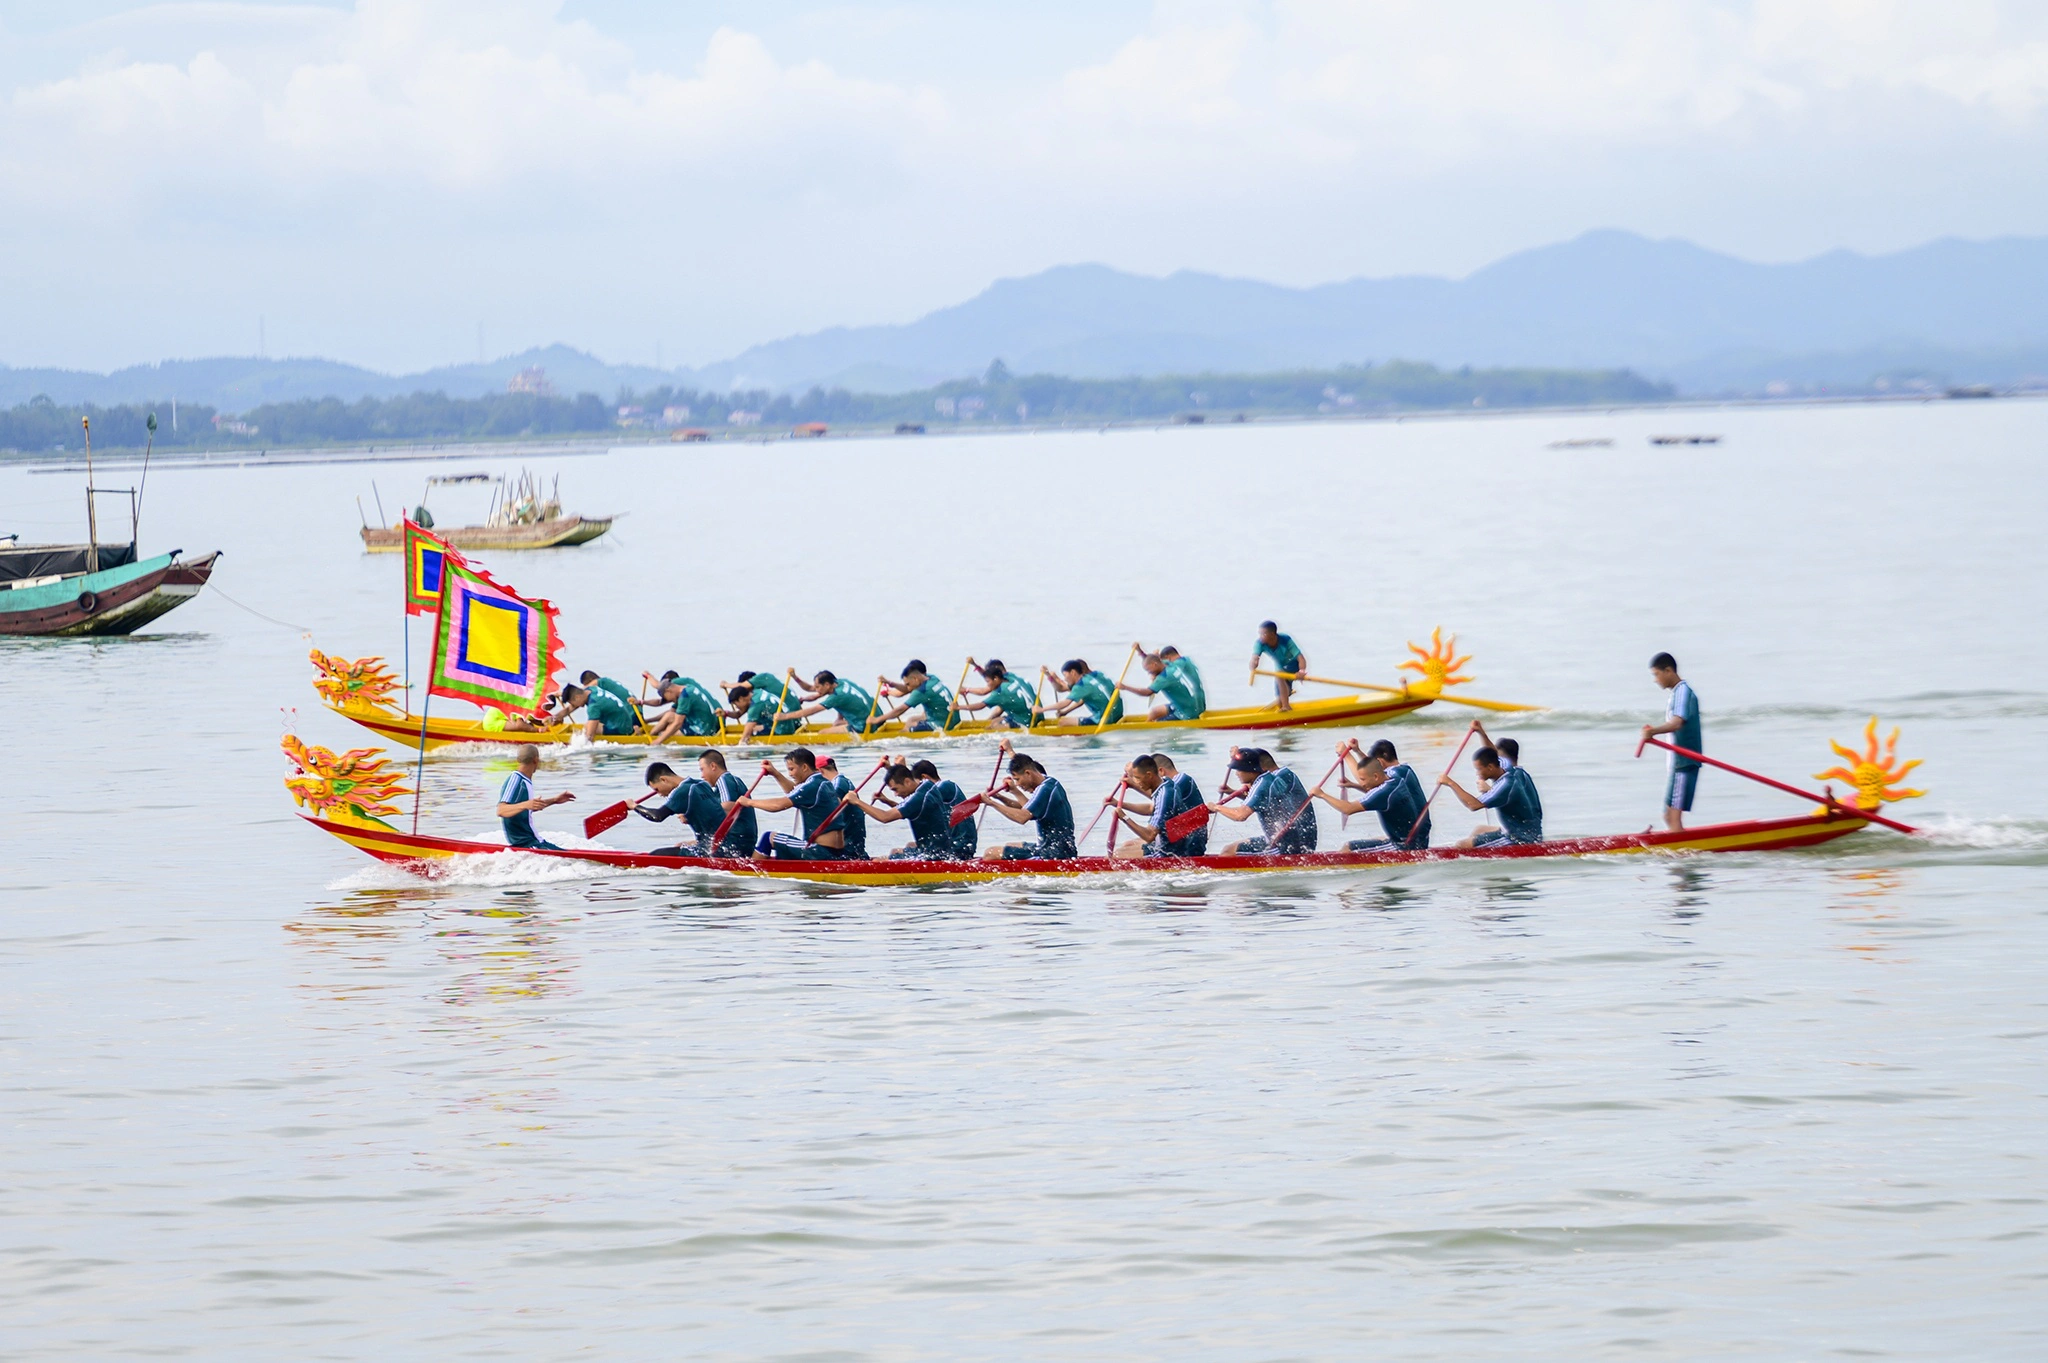 Đặc sắc lễ hội Trà Cổ ở Quảng Ninh hấp dẫn du khách 